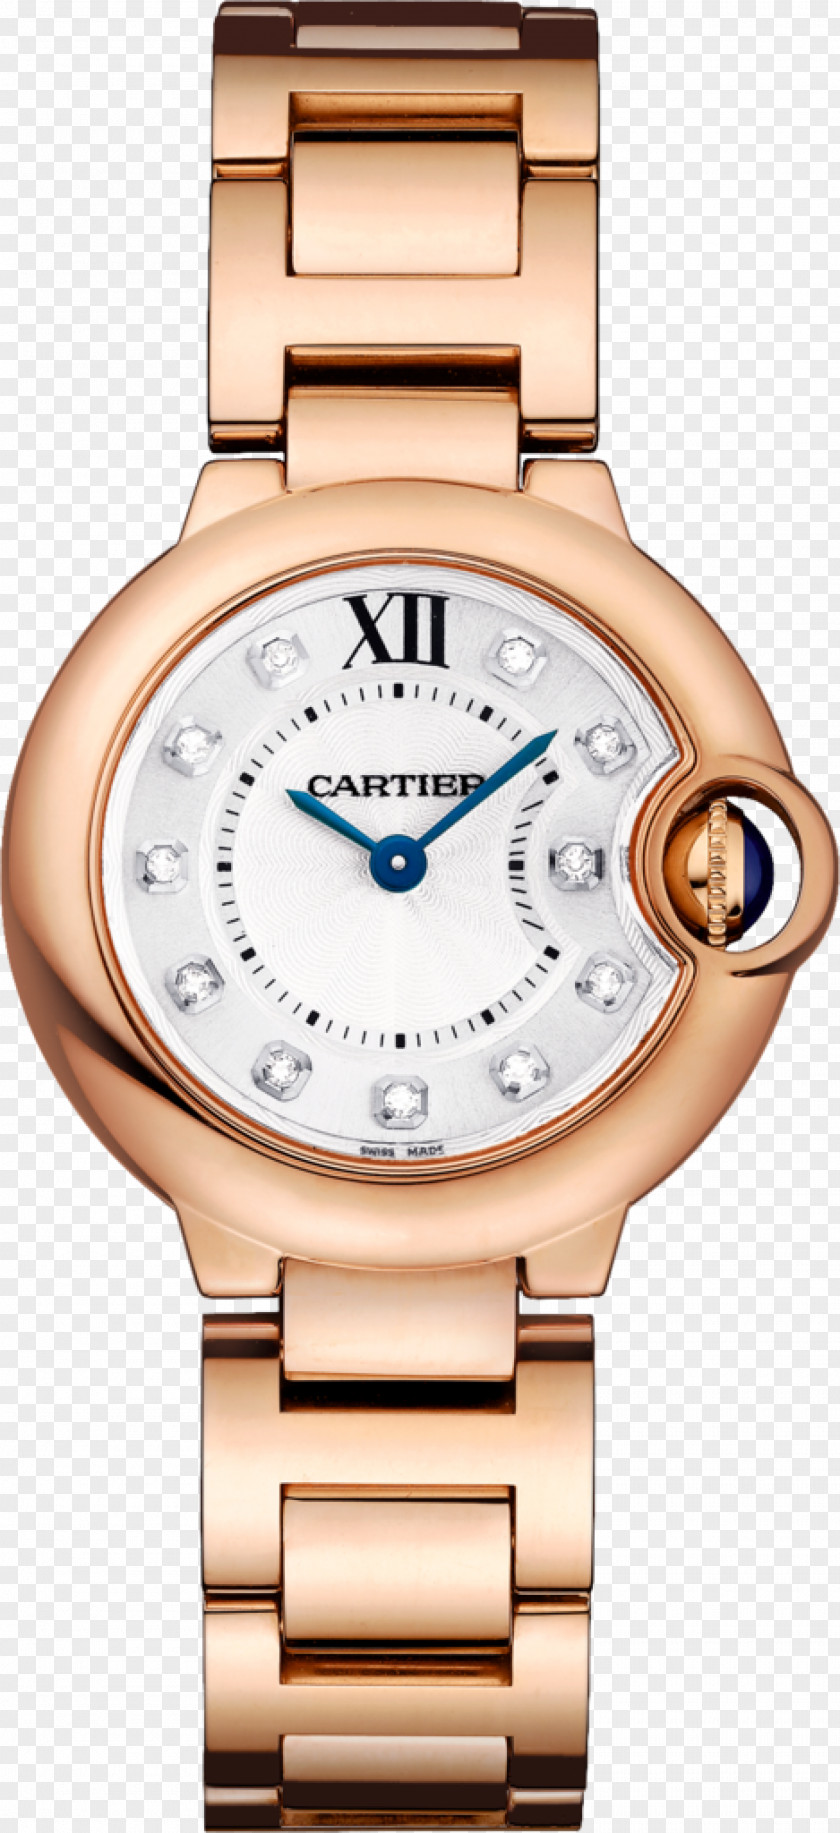 Watch Cartier Ballon Bleu Fifth Avenue Jewellery PNG